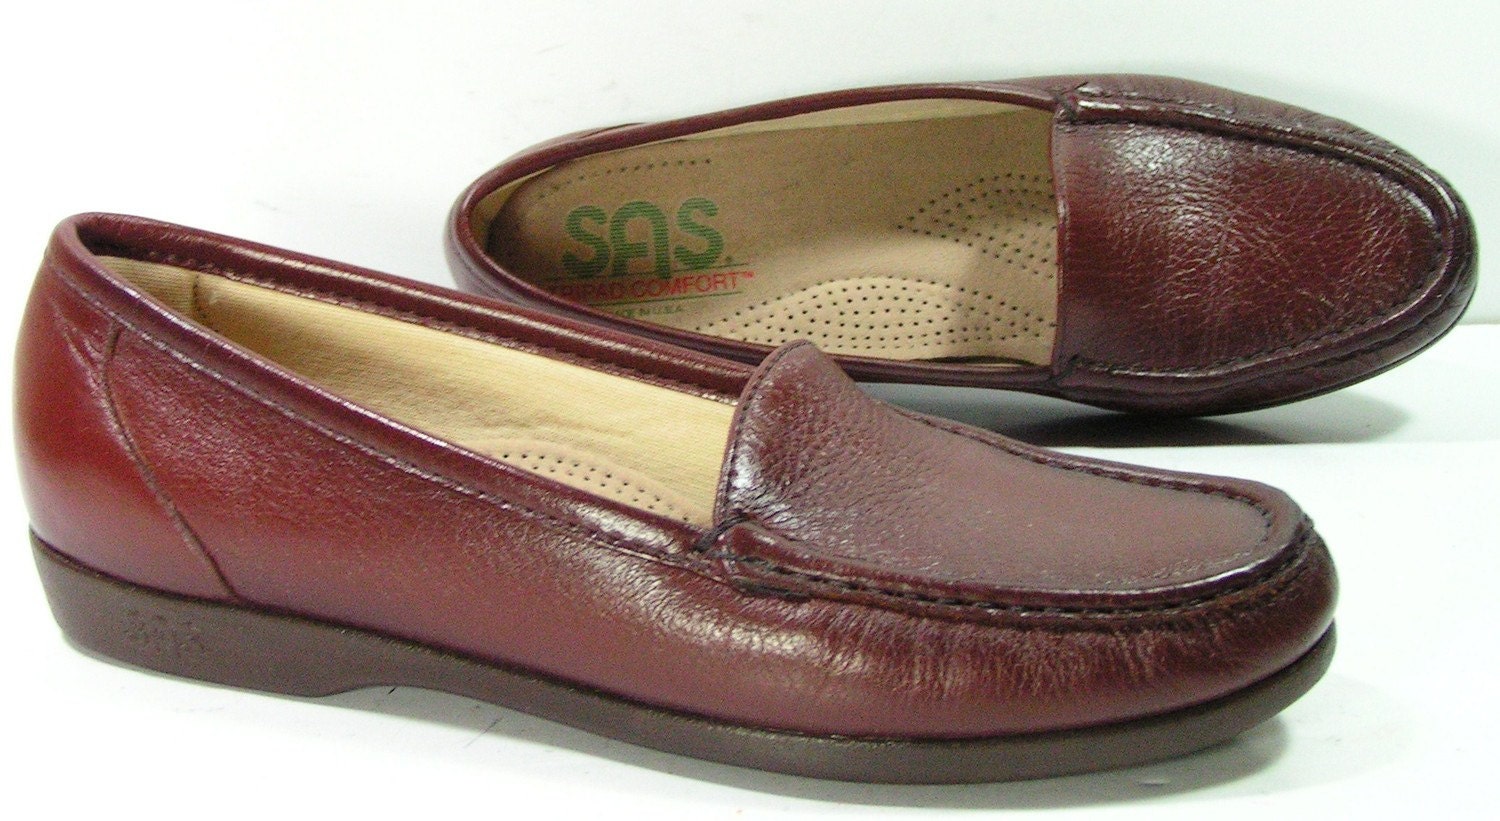 Sas Shoes